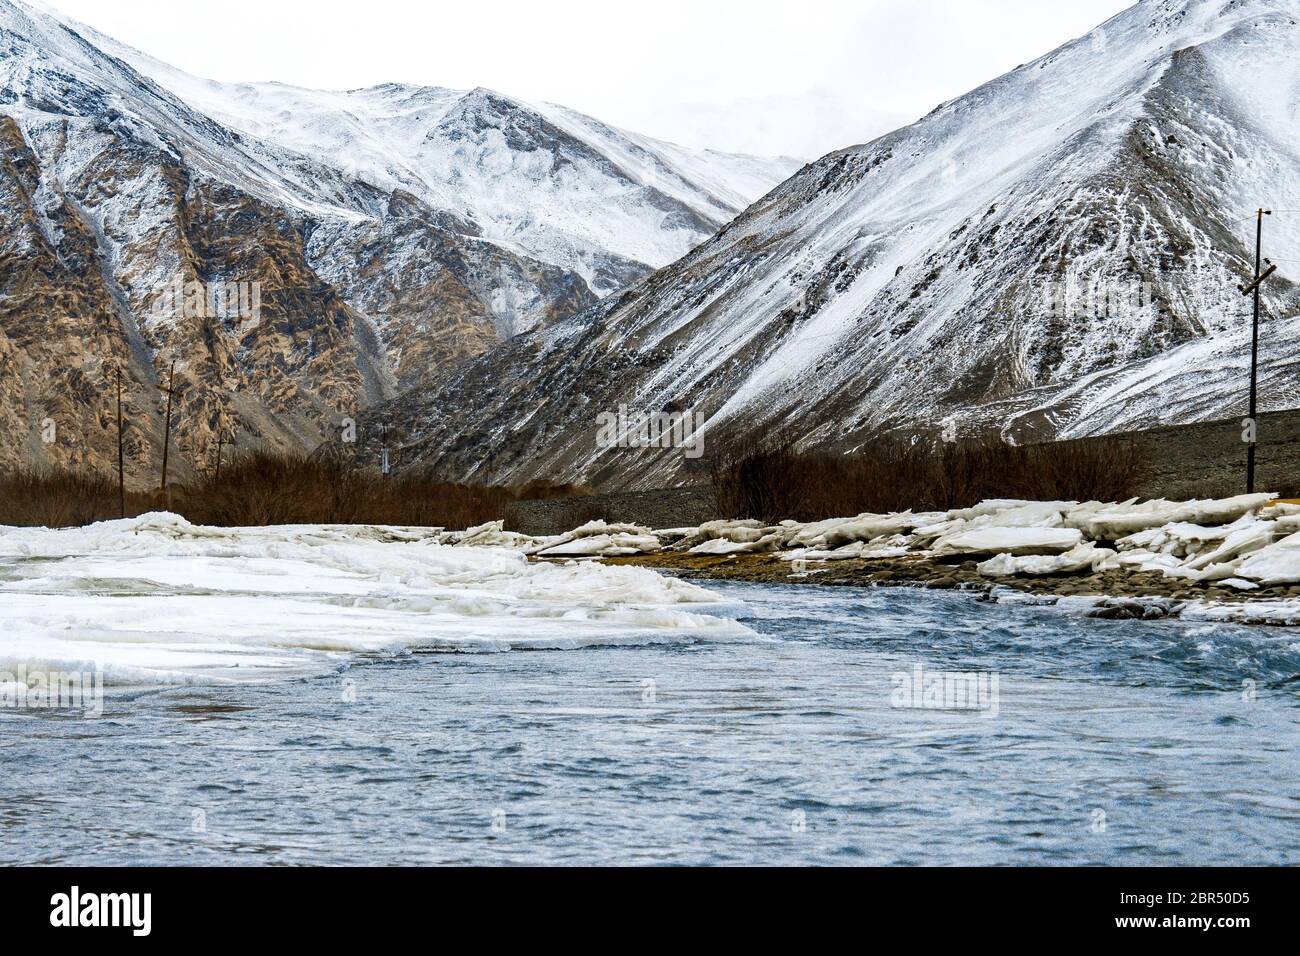 Gefrorener Indus Fluss fließt durch die schneebedeckten Berge von Ladakh, Jammu und Kaschmir, Indien, Asien. Landschaft von natürlicher Schönheit im Nubra Tal. Stockfoto